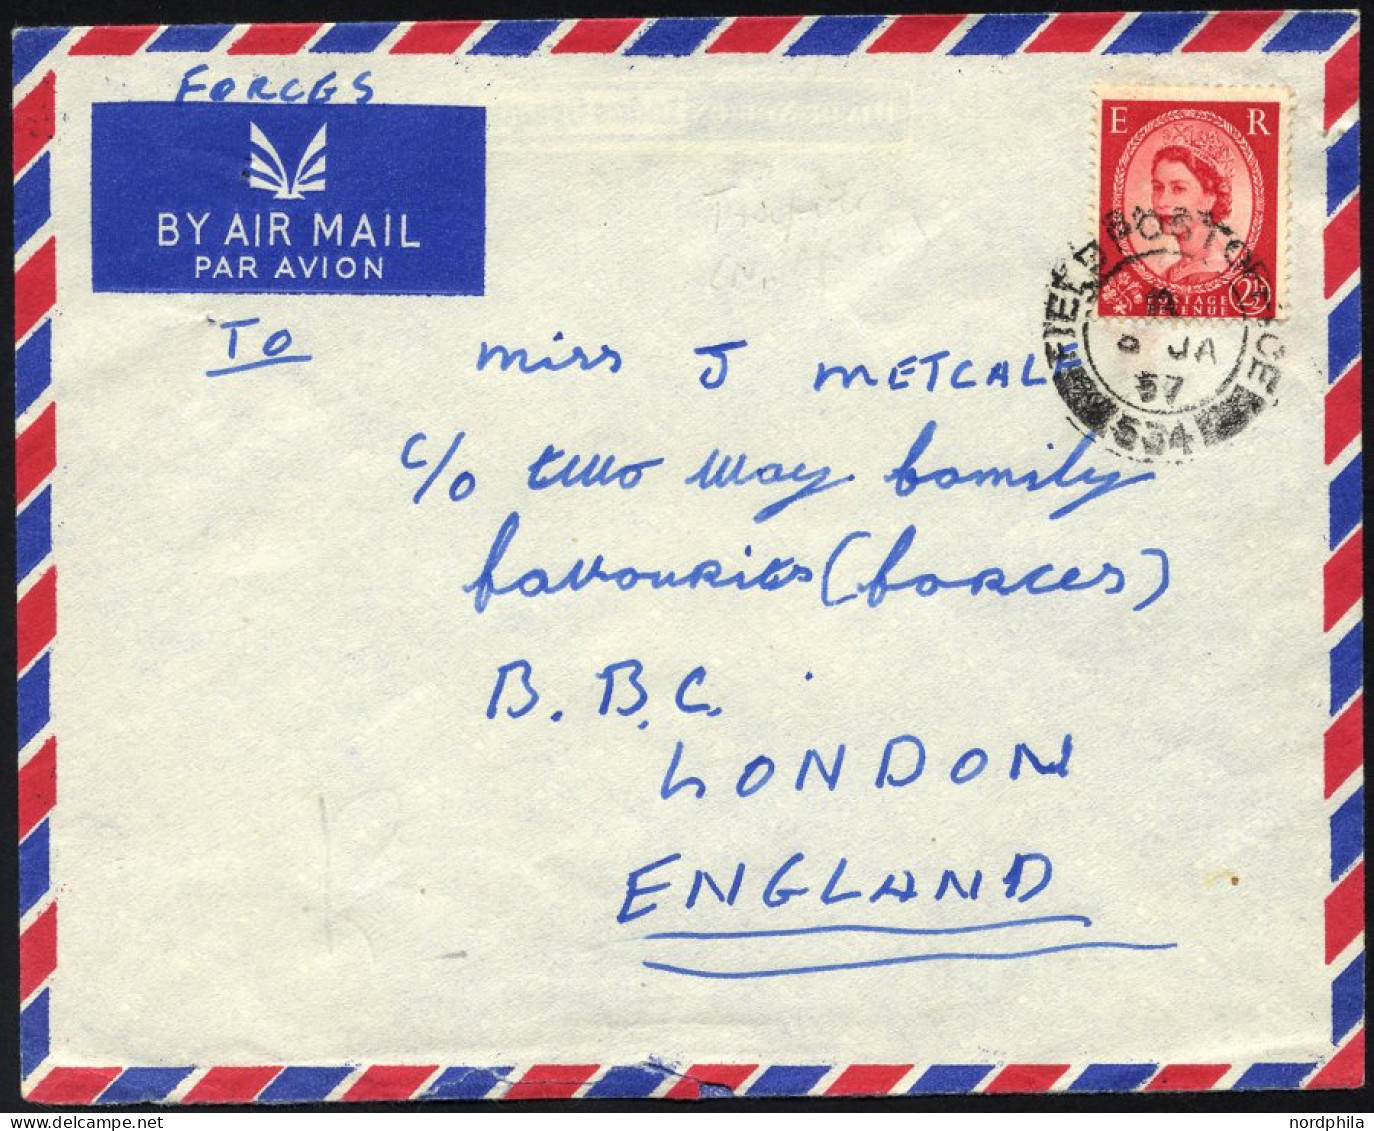 BRITISCHE MILITÄRPOST 261 BRIEF, 1957, K2 FIELD POST SERVICE/534 Auf Feldpostbrief Nach London über Das Britische Hauptf - Gebraucht